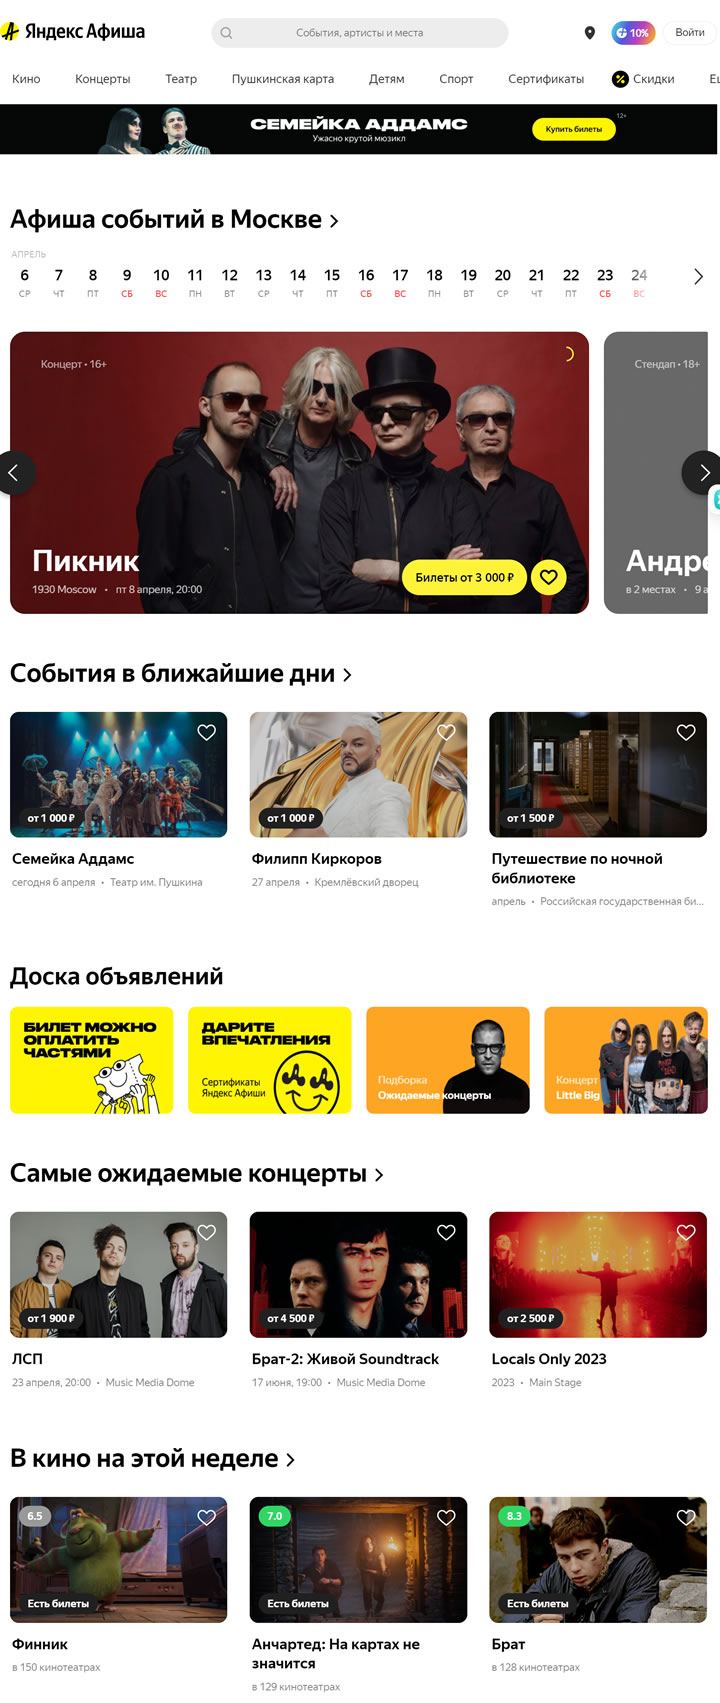 Yandex.Afisha：俄罗斯最大的活动门票聚合商